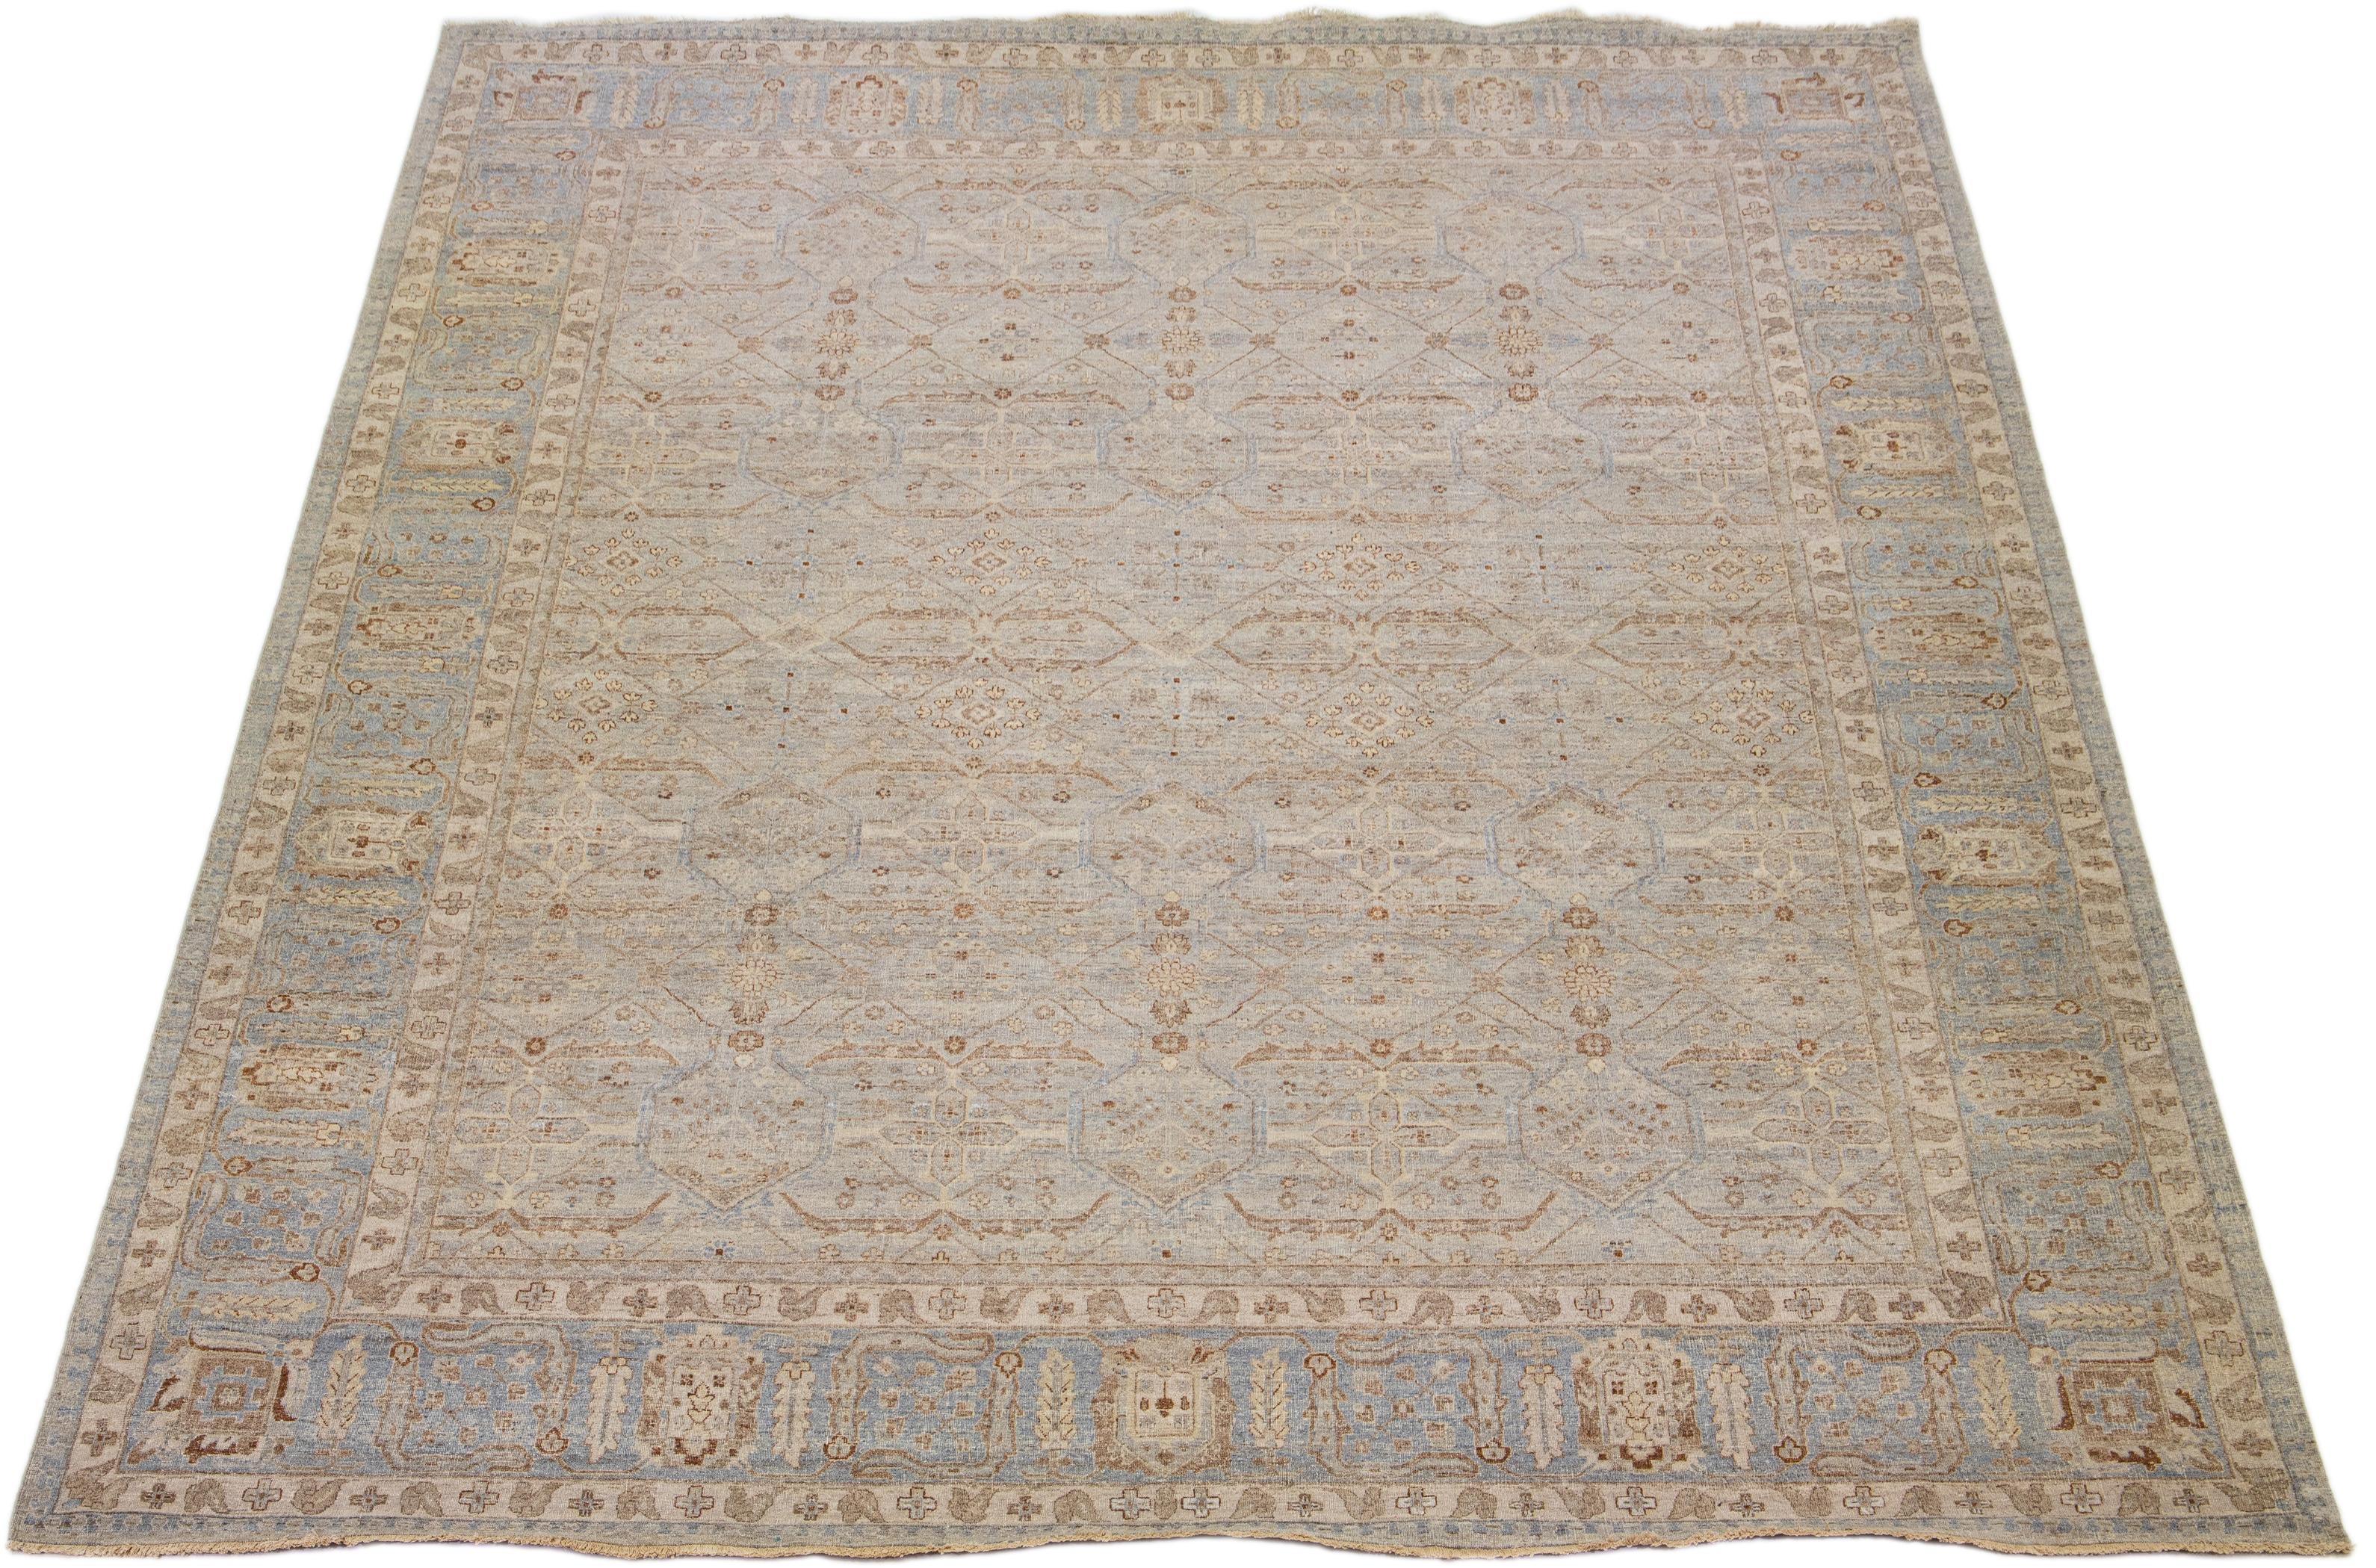 Die Artisan Line von Apadana ist eine Neuinterpretation antiker Teppiche, die auf elegante Weise eine auffällige antike Ästhetik in einen Raum bringt. Diese Teppichserie ist ausgesprochen einzigartig und zeigt, wie ein antiker Teppich aussehen kann.